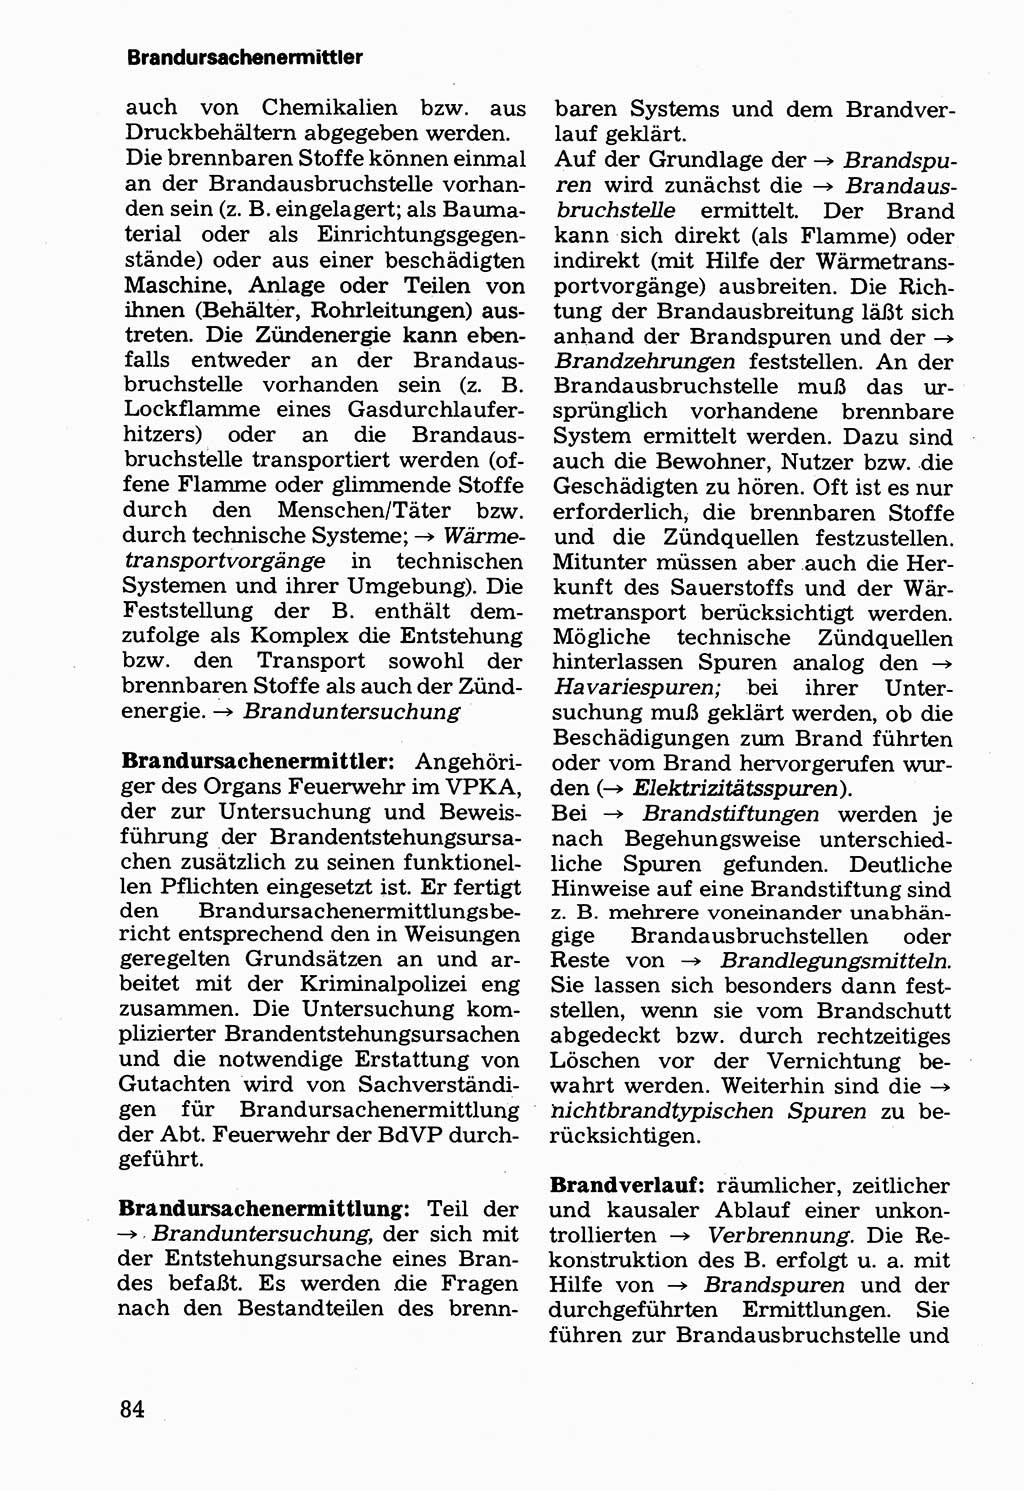 Wörterbuch der sozialistischen Kriminalistik [Deutsche Demokratische Republik (DDR)] 1981, Seite 84 (Wb. soz. Krim. DDR 1981, S. 84)